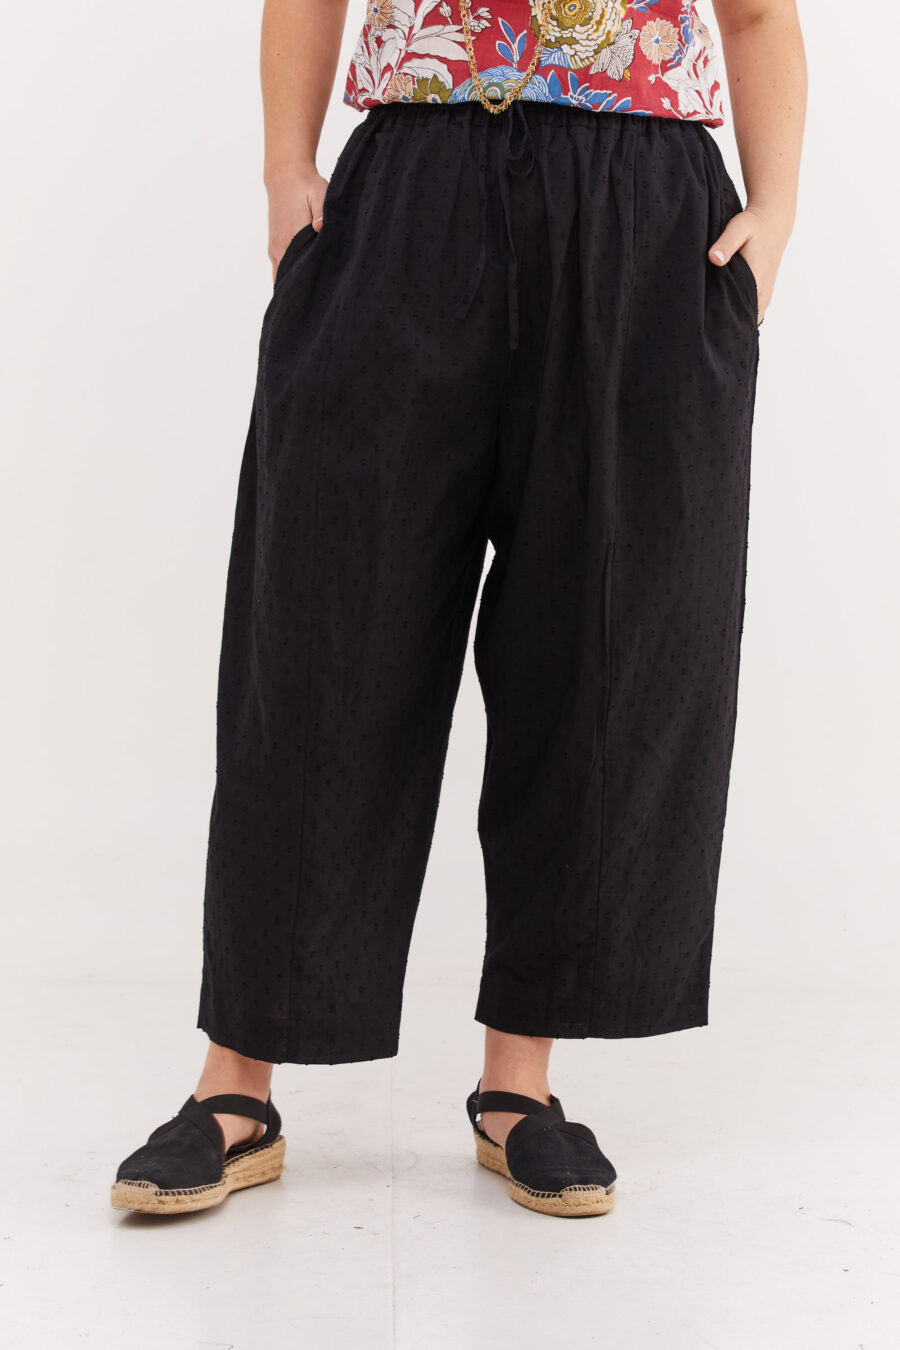 מכנסי בוהו שיק | מכנסיים מעוצבים ונוחים של קומפורט זון בוטיק – מכנסיים שחורים עם עיגולים עדינים בבד שיוצרים טקסטורה מיוחדת